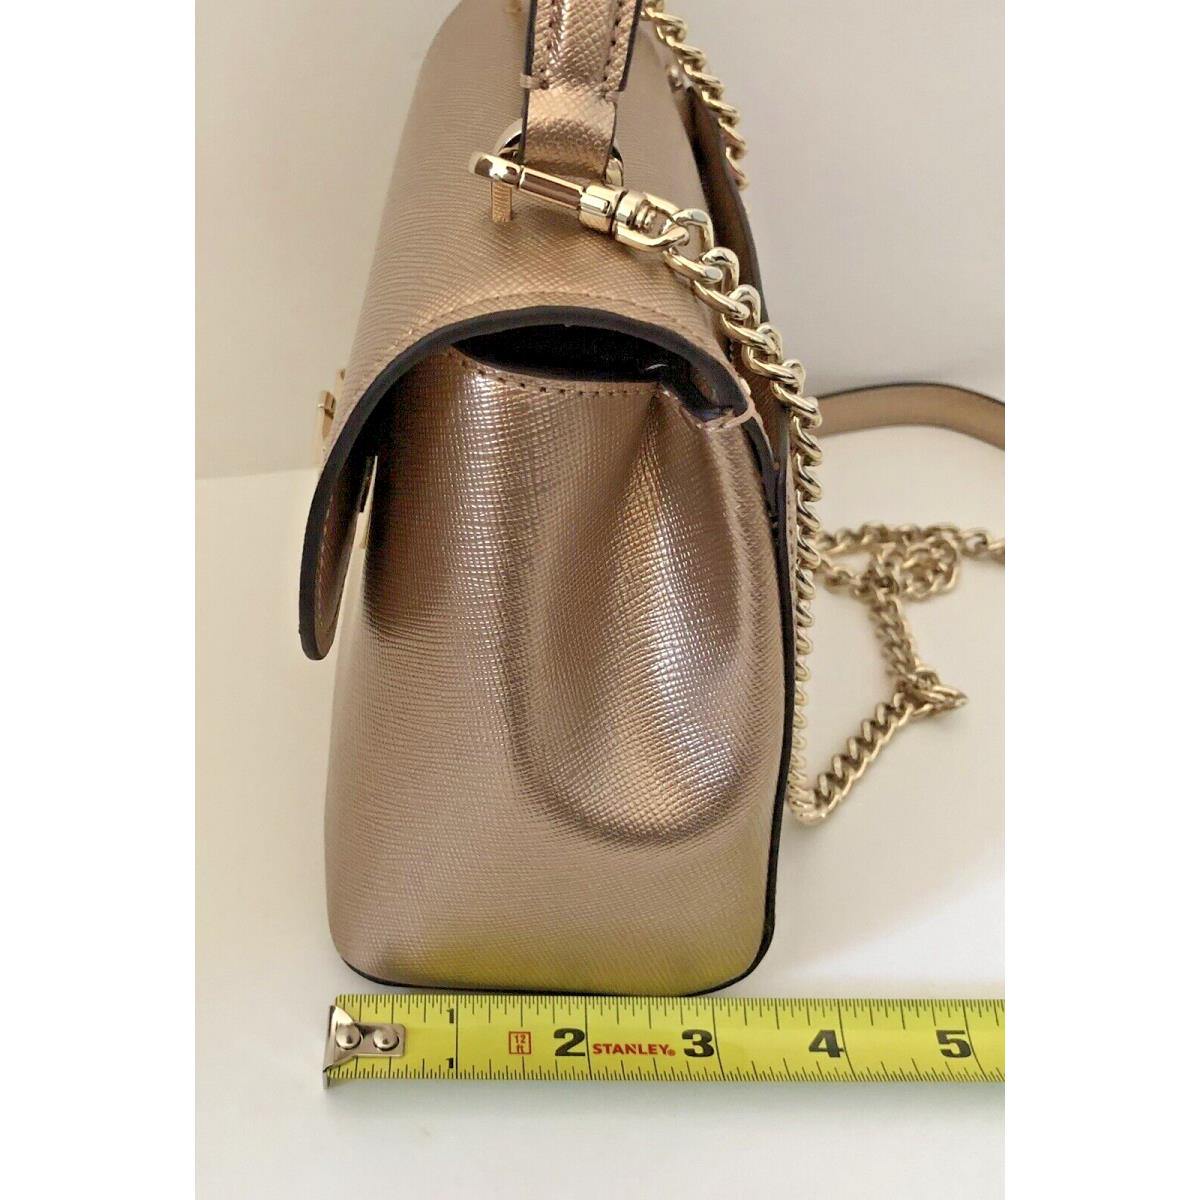 Buy KATE SPADE NY Gold Coast Small Georgina Satchel Purse Handbag Black  Leather NWT at Amazon.in